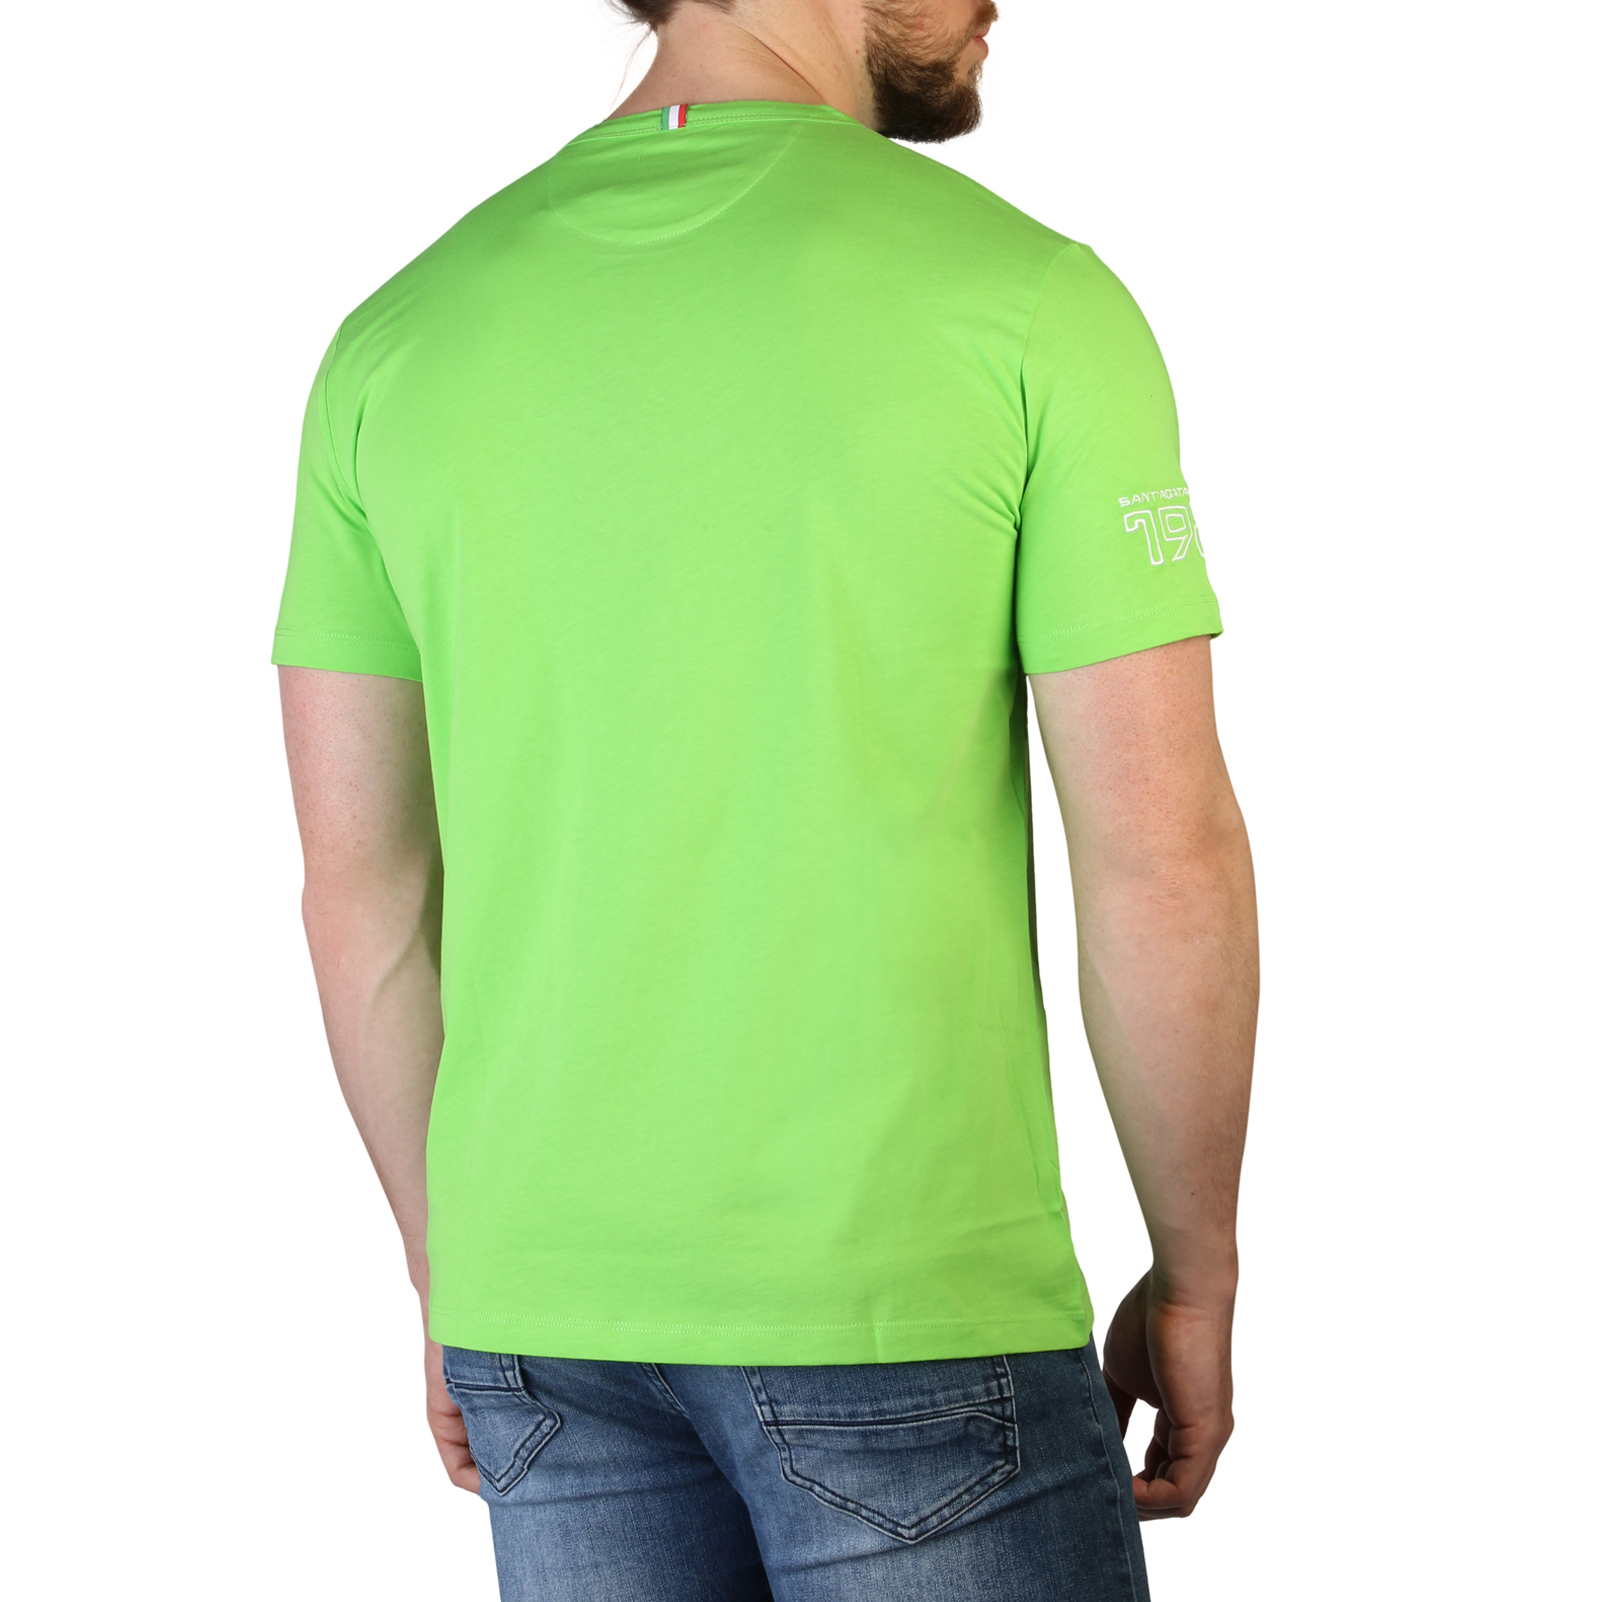 Lamborghini Green T-shirts for Men - B3XVB7T4